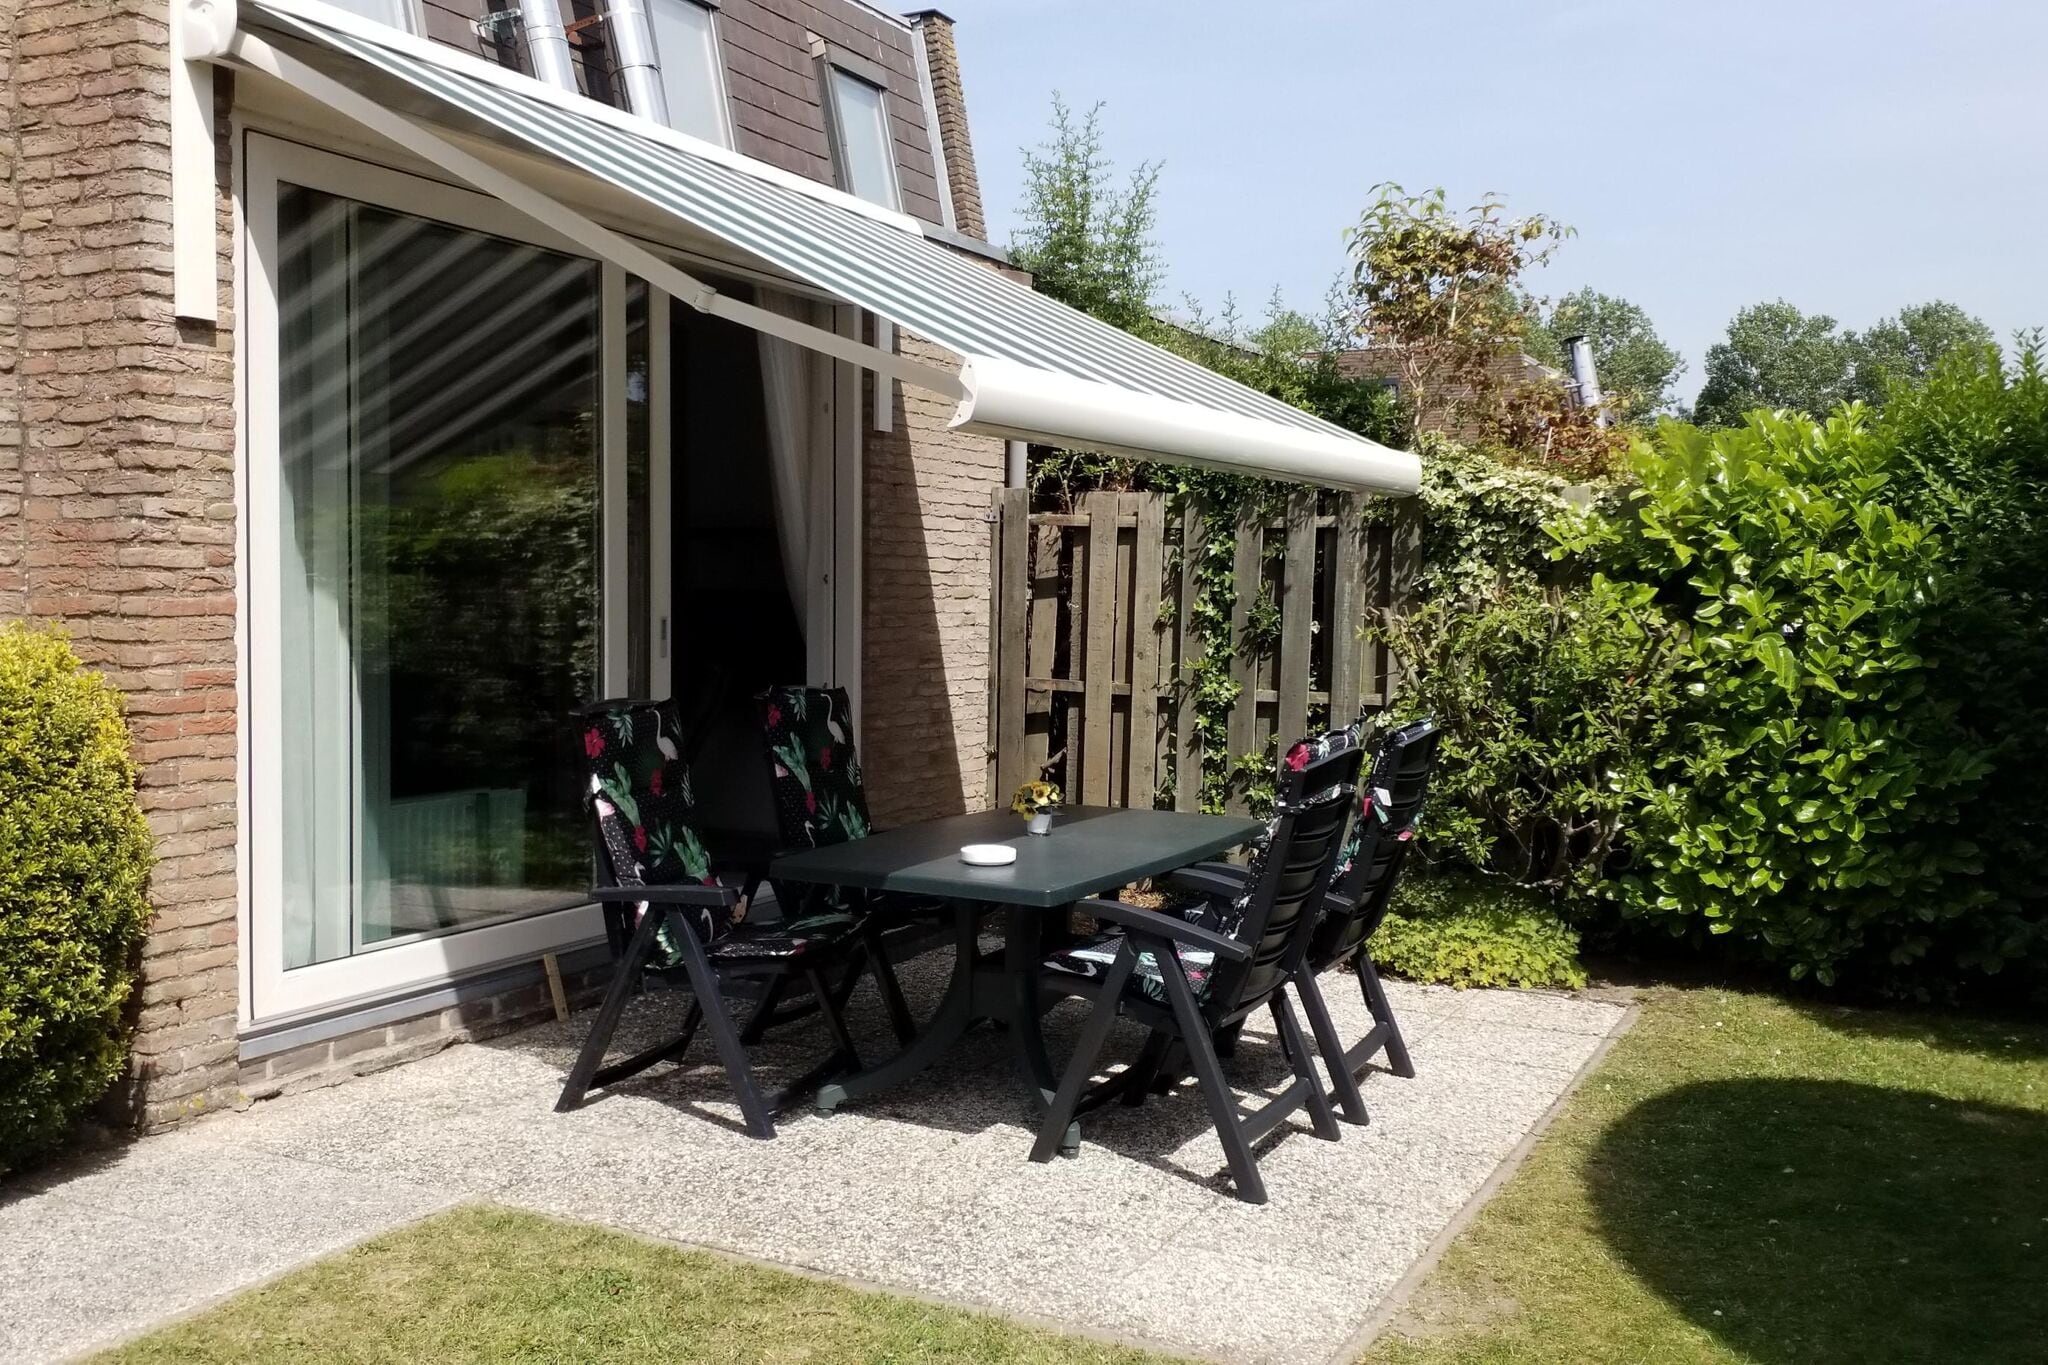 Maison de vacances bien entretenue avec grand jardin, située à Nieuwvliet